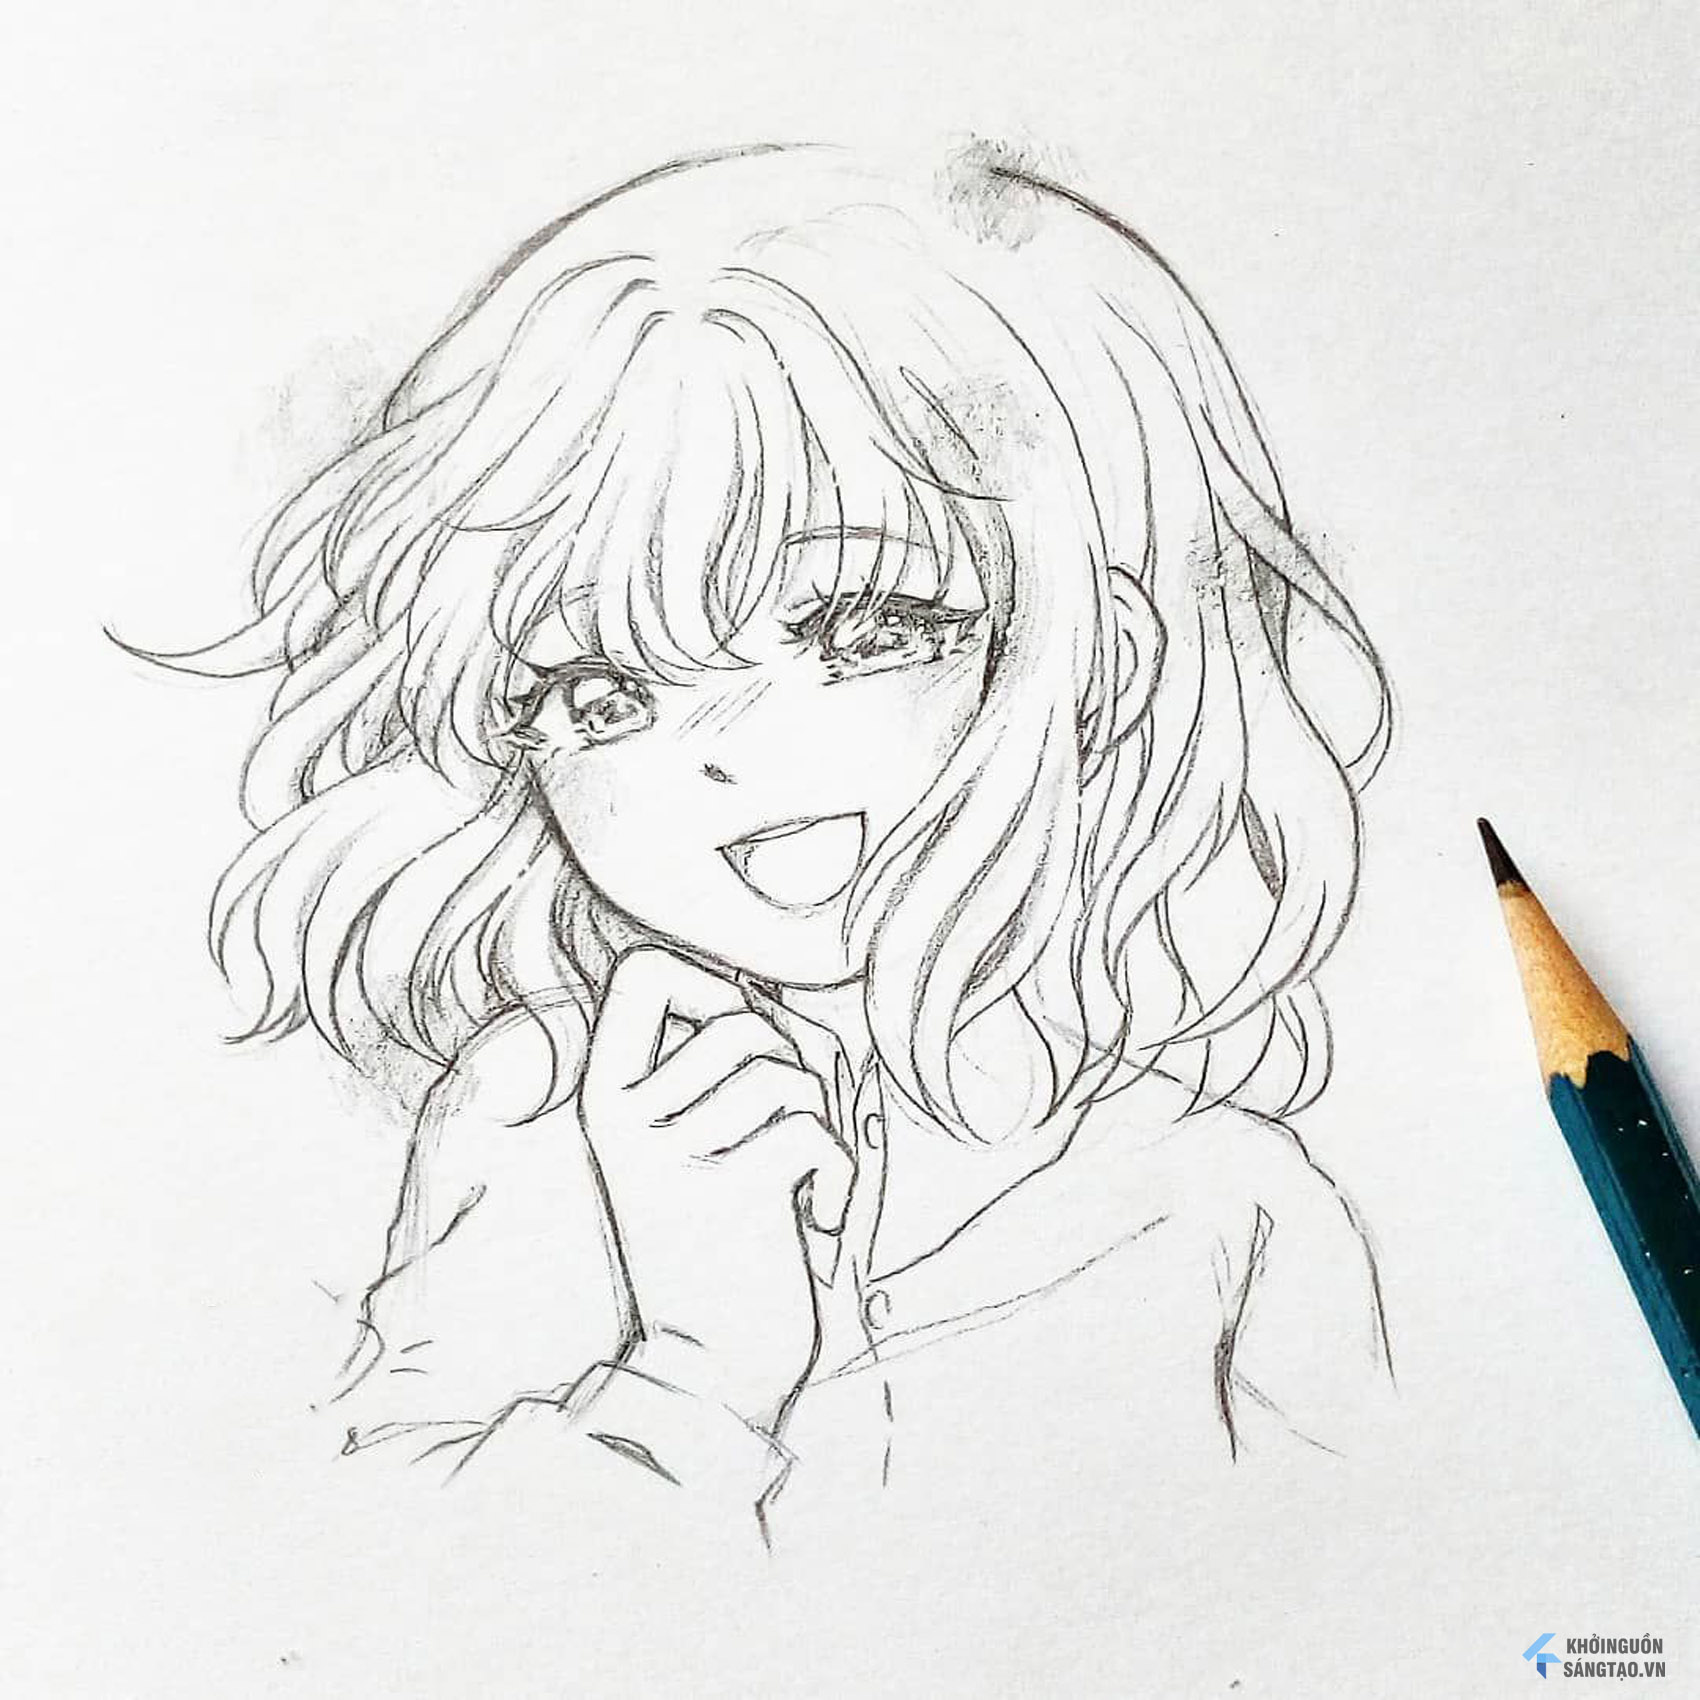 Hướng dẫn vẽ miệng nhân vật Anime cực xinh cực đơn giản